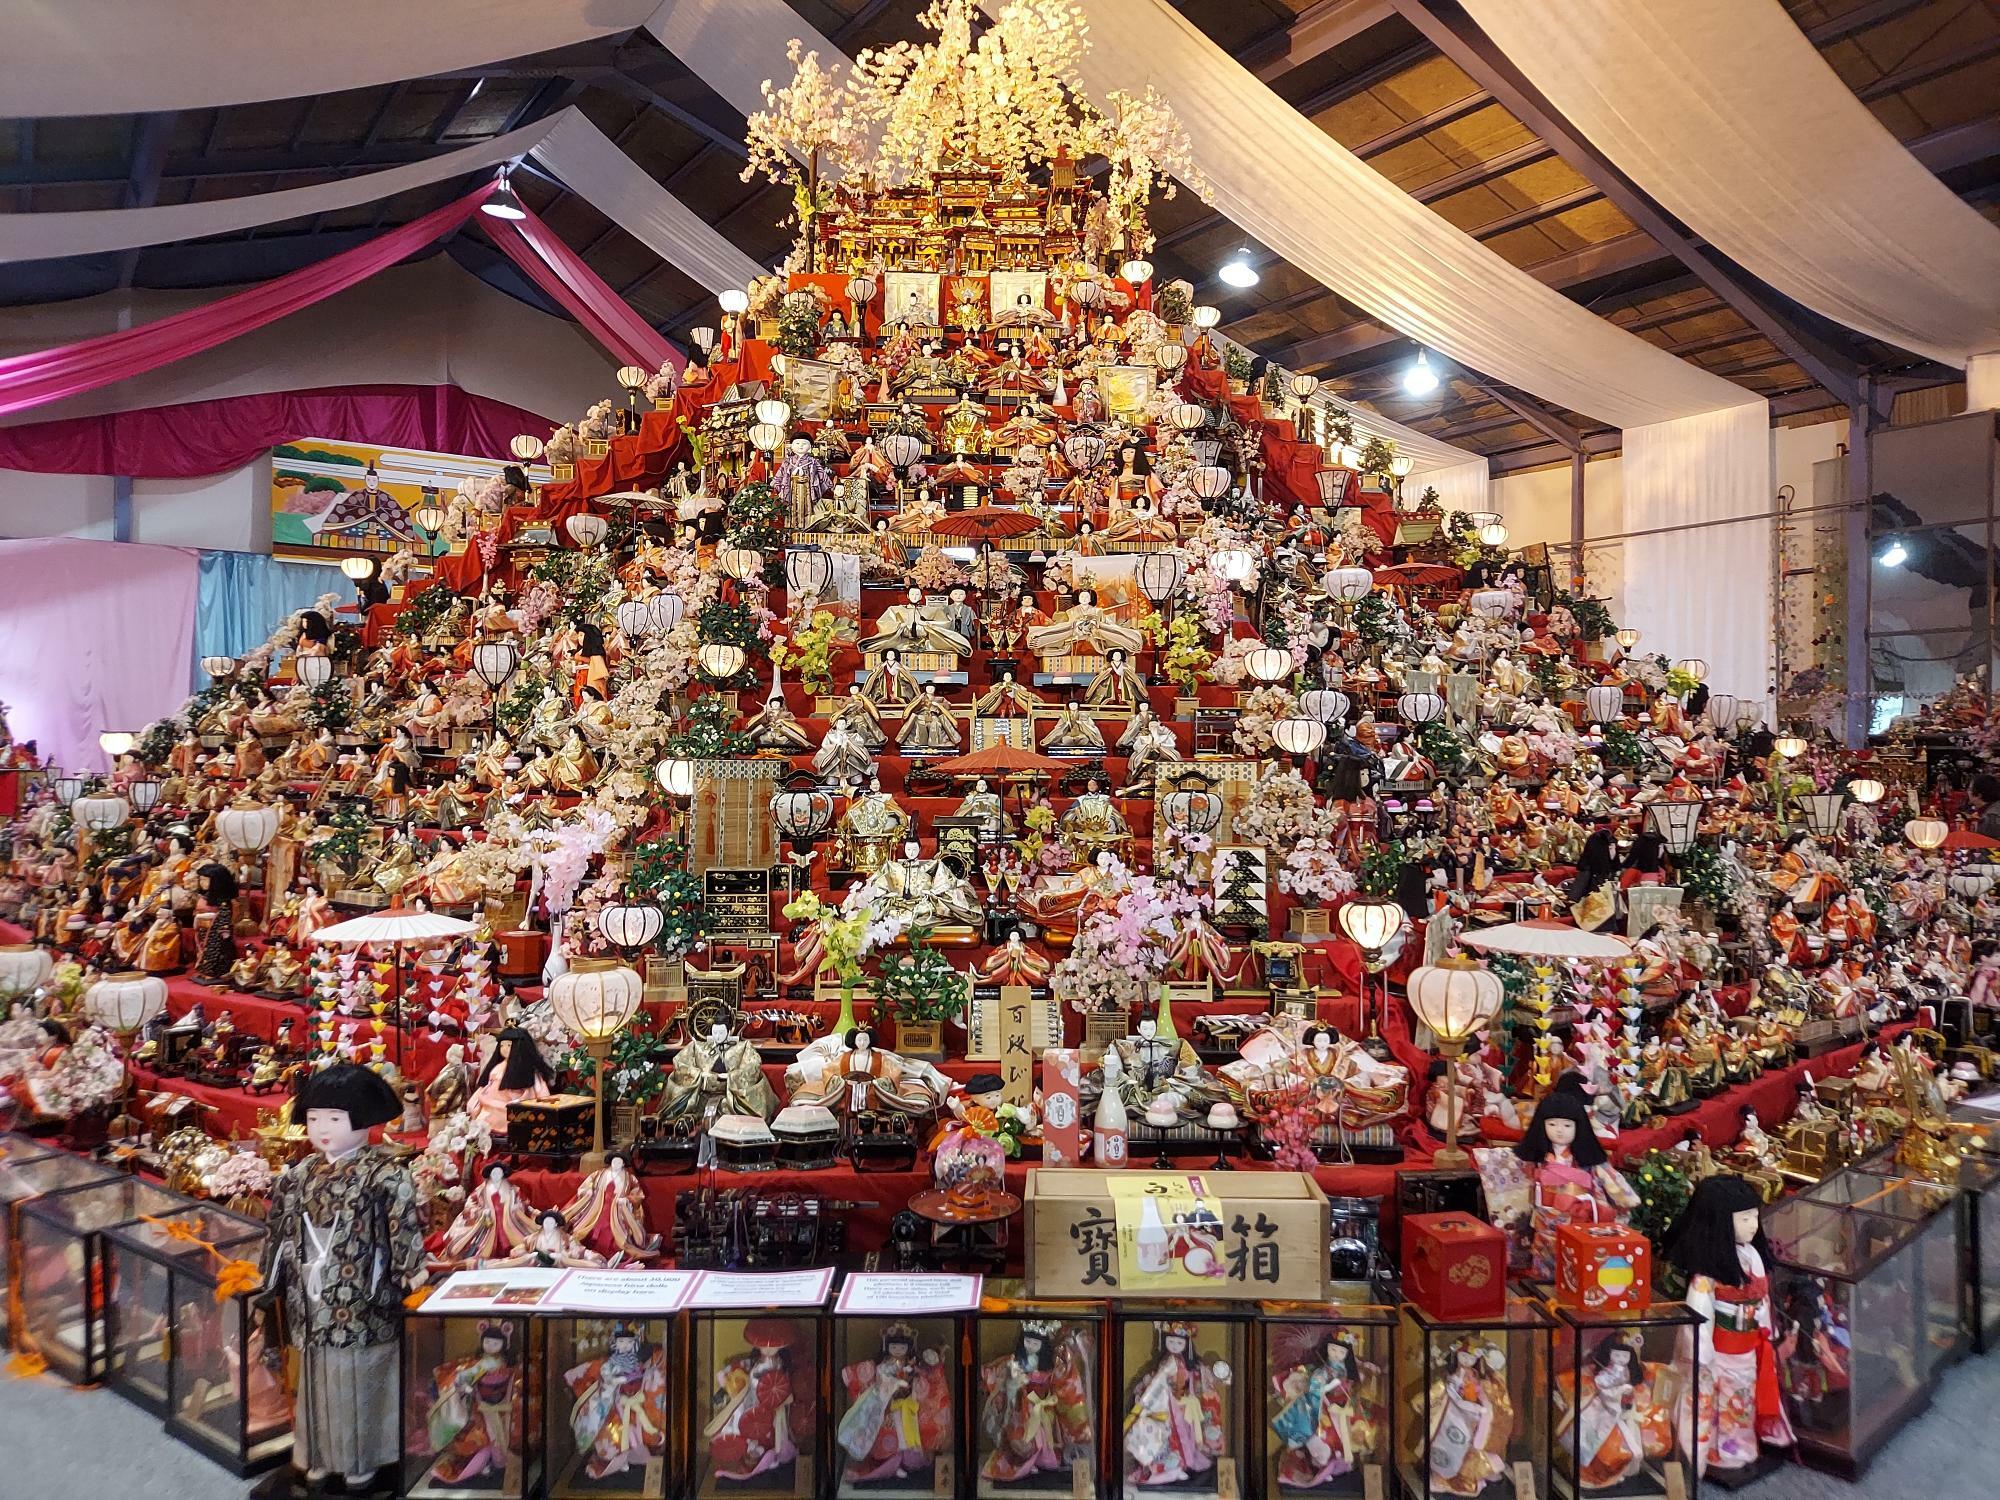 阿波勝浦元祖ビッグひな祭りの8mを超える巨大なひな壇